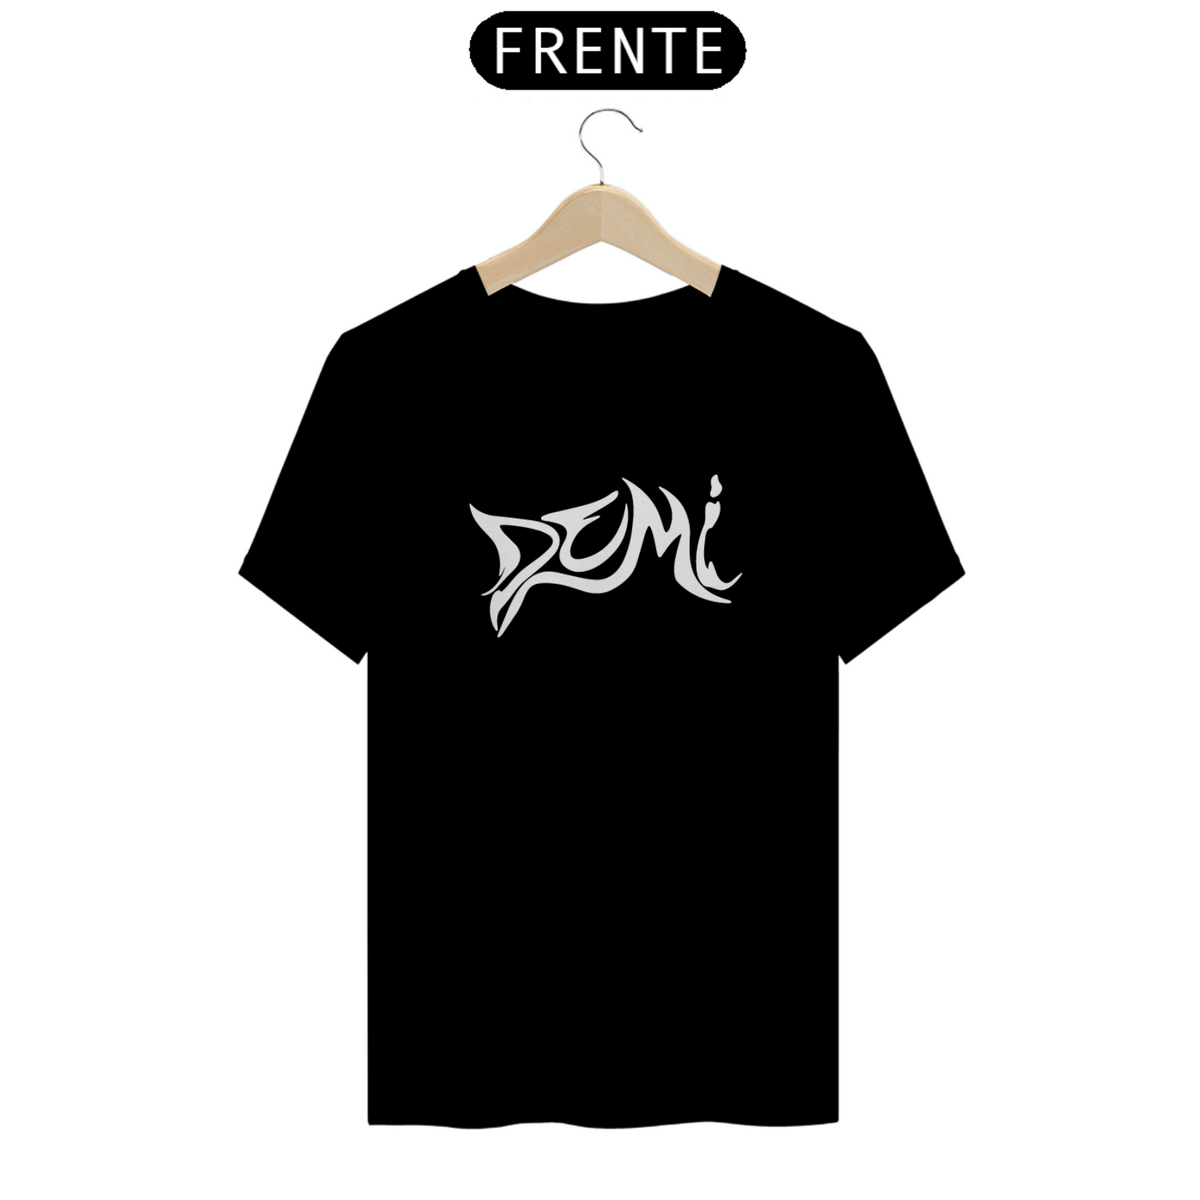 Nome do produto: Camiseta Unissex - Demi Lovato 